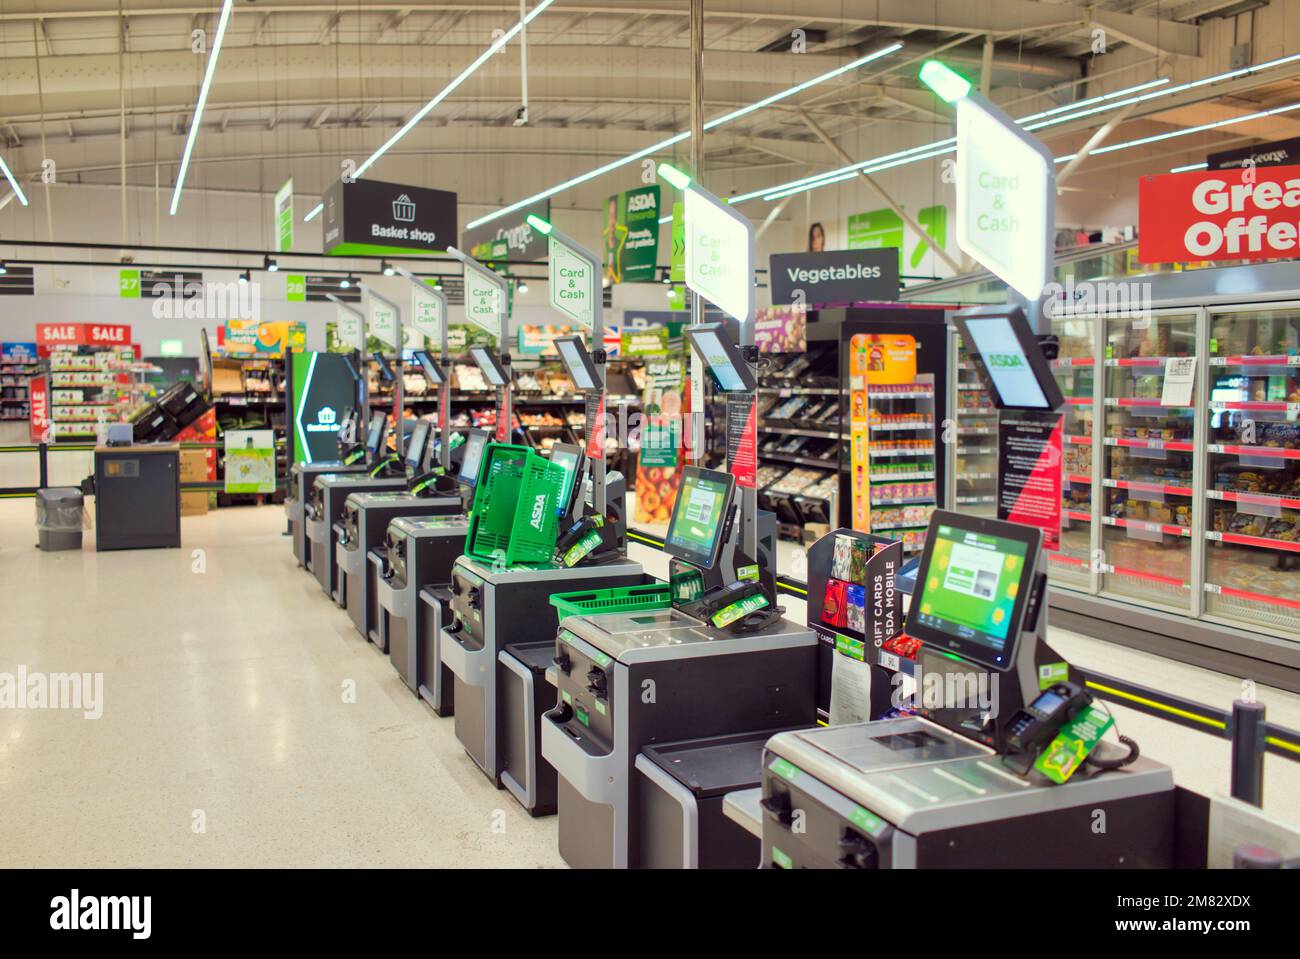 Máquinas de autoservicio interior del supermercado Asda Foto de stock